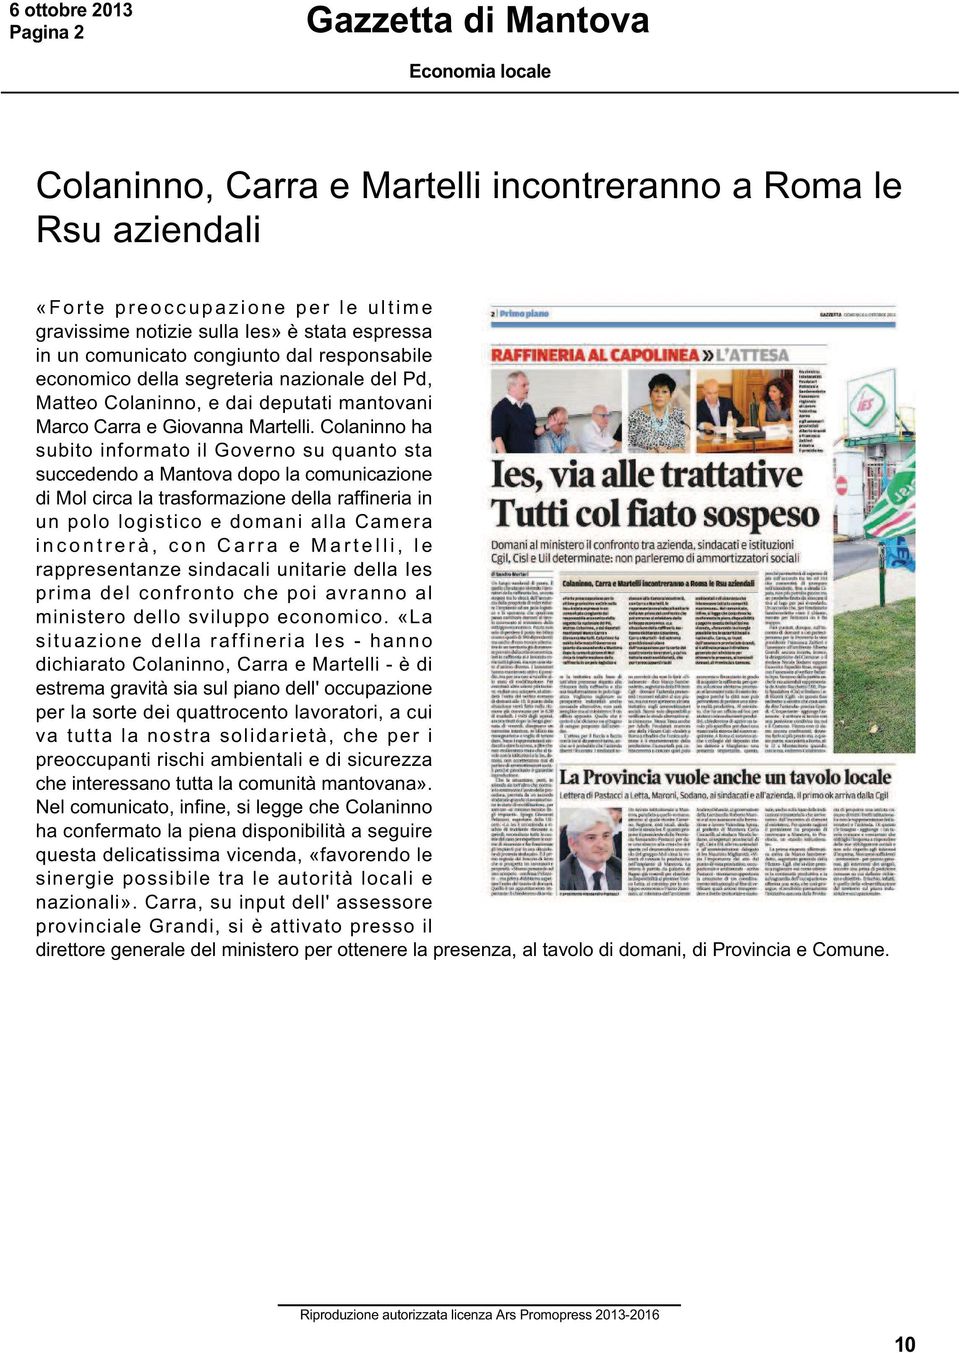 Colaninno ha subito informato il Governo su quanto sta succedendo a Mantova dopo la comunicazione di Mol circa la trasformazione della raffineria in un polo logistico e domani alla Camera